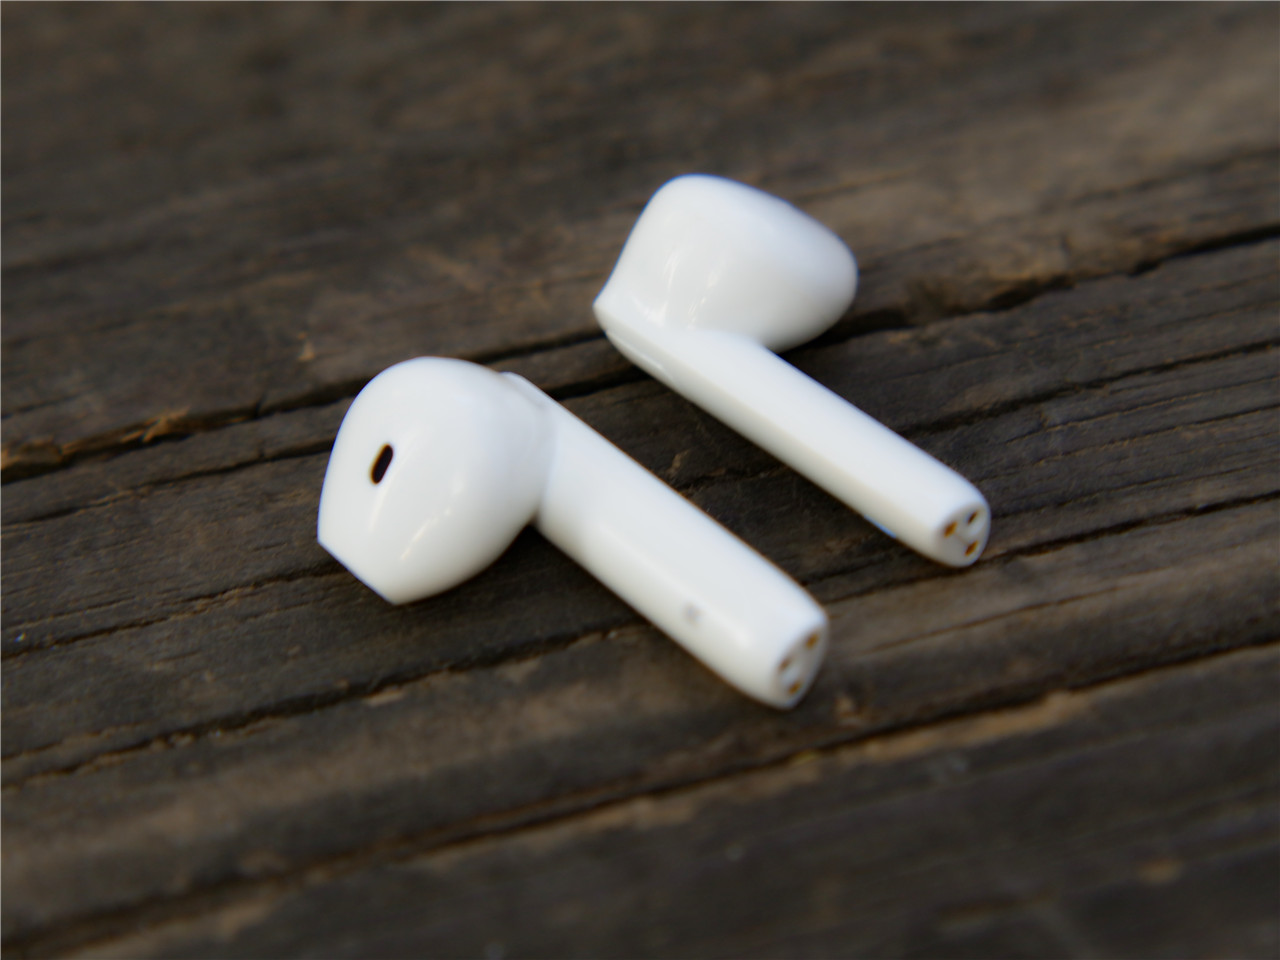 兼顾休闲和娱乐的南卡Lite Pro半入耳蓝牙耳机